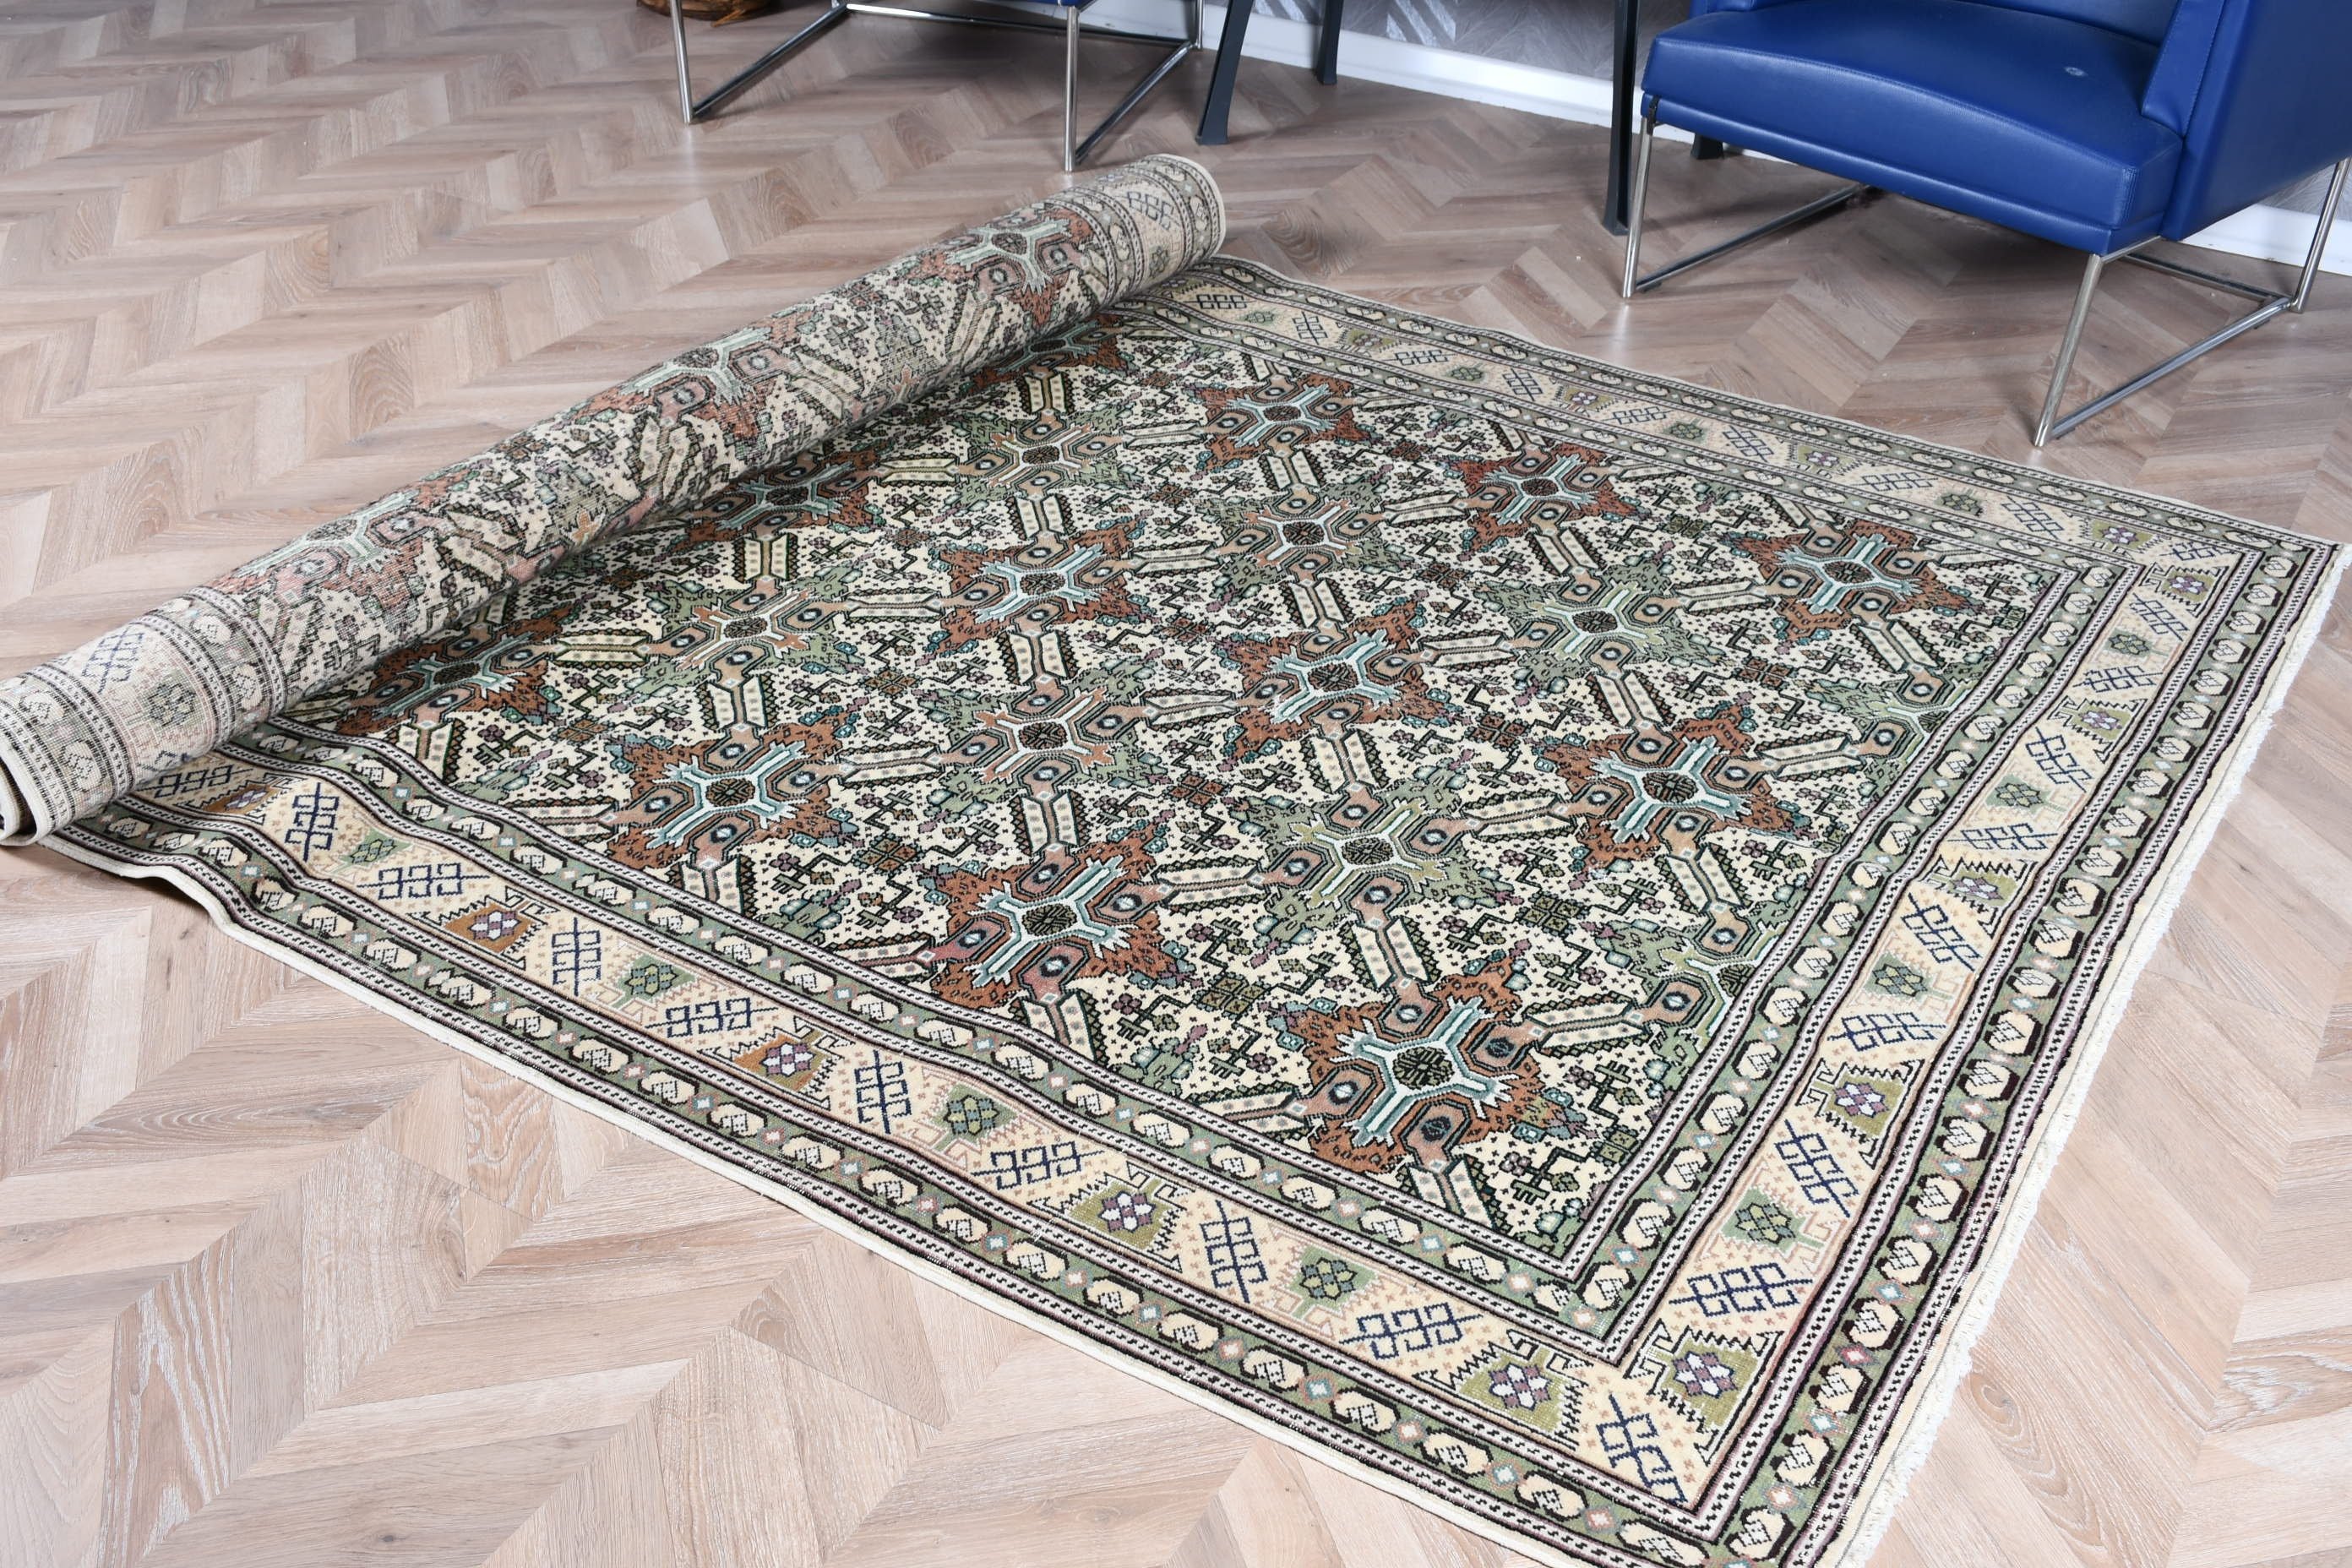 Turkish Rug, Cool Rug, Floor Rugs, Vintage Rugs, Boho Rugs, 6.2x9.6 ft Large Rugs, Bedroom Rug, Green Antique Rugs, Dining Room Rug